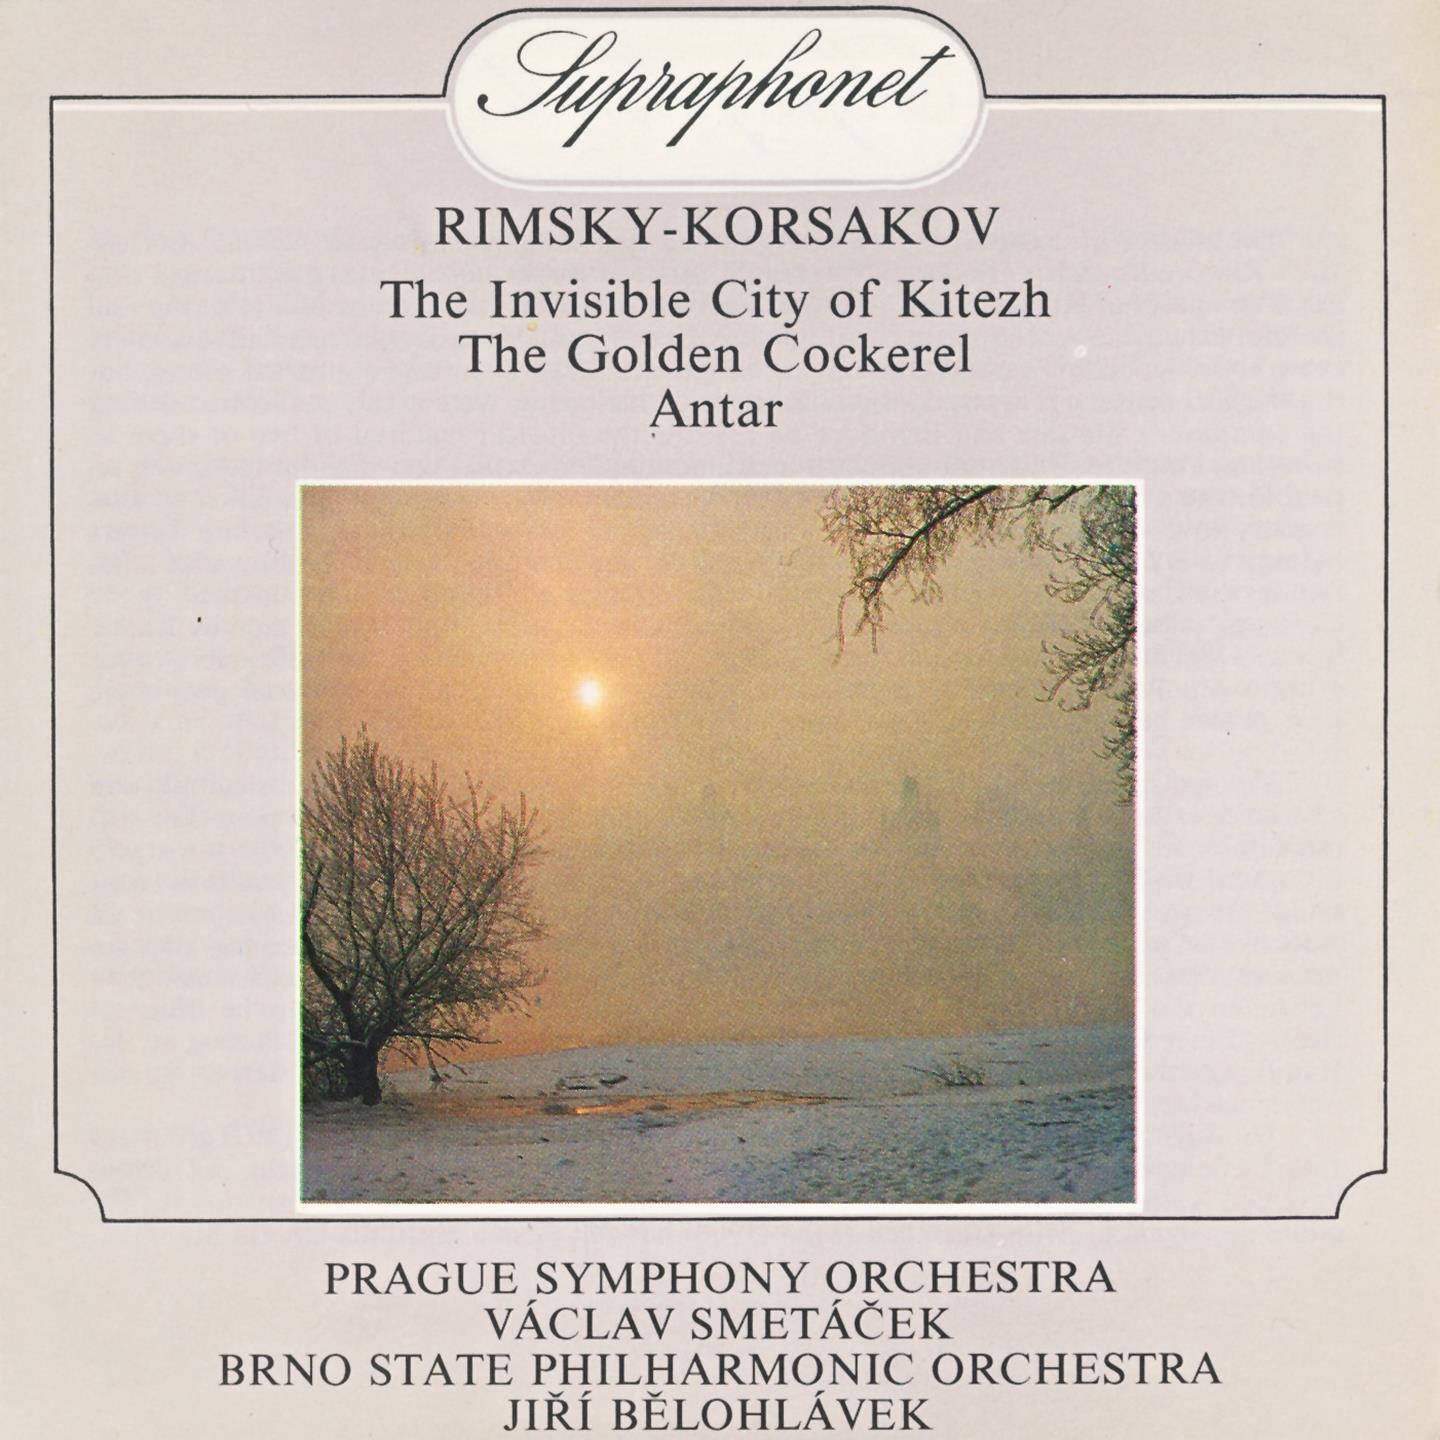 Rimsky-Korsakov: The Legend of the Invisible City of Kitezh, The Golden Cockerel, Antar